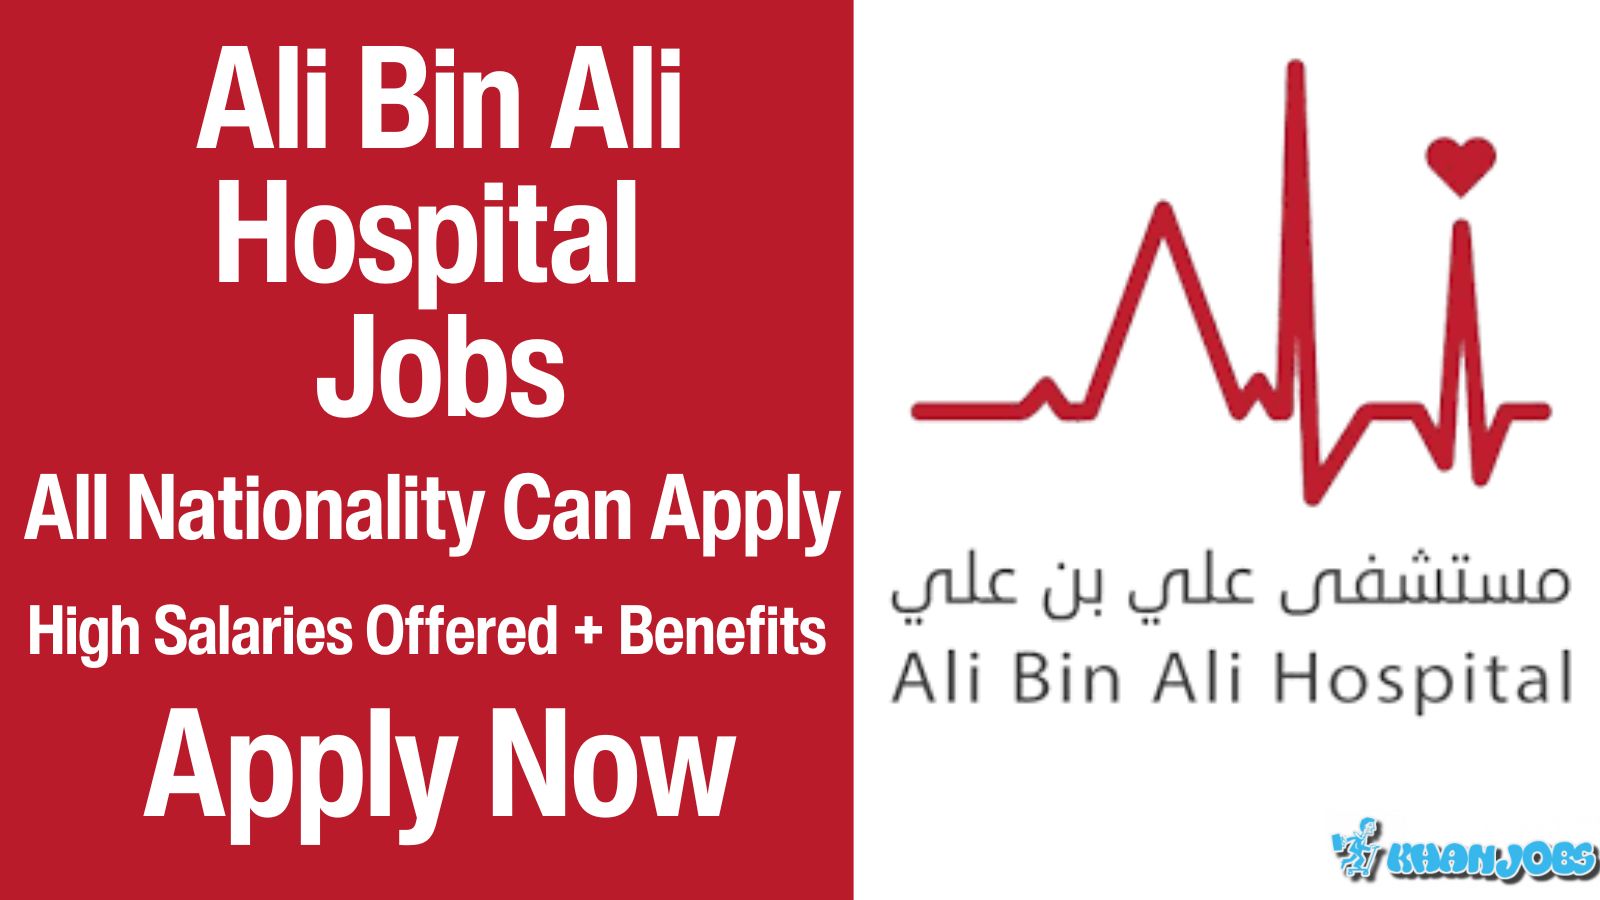 Ali Bin Ali Hospital Careers